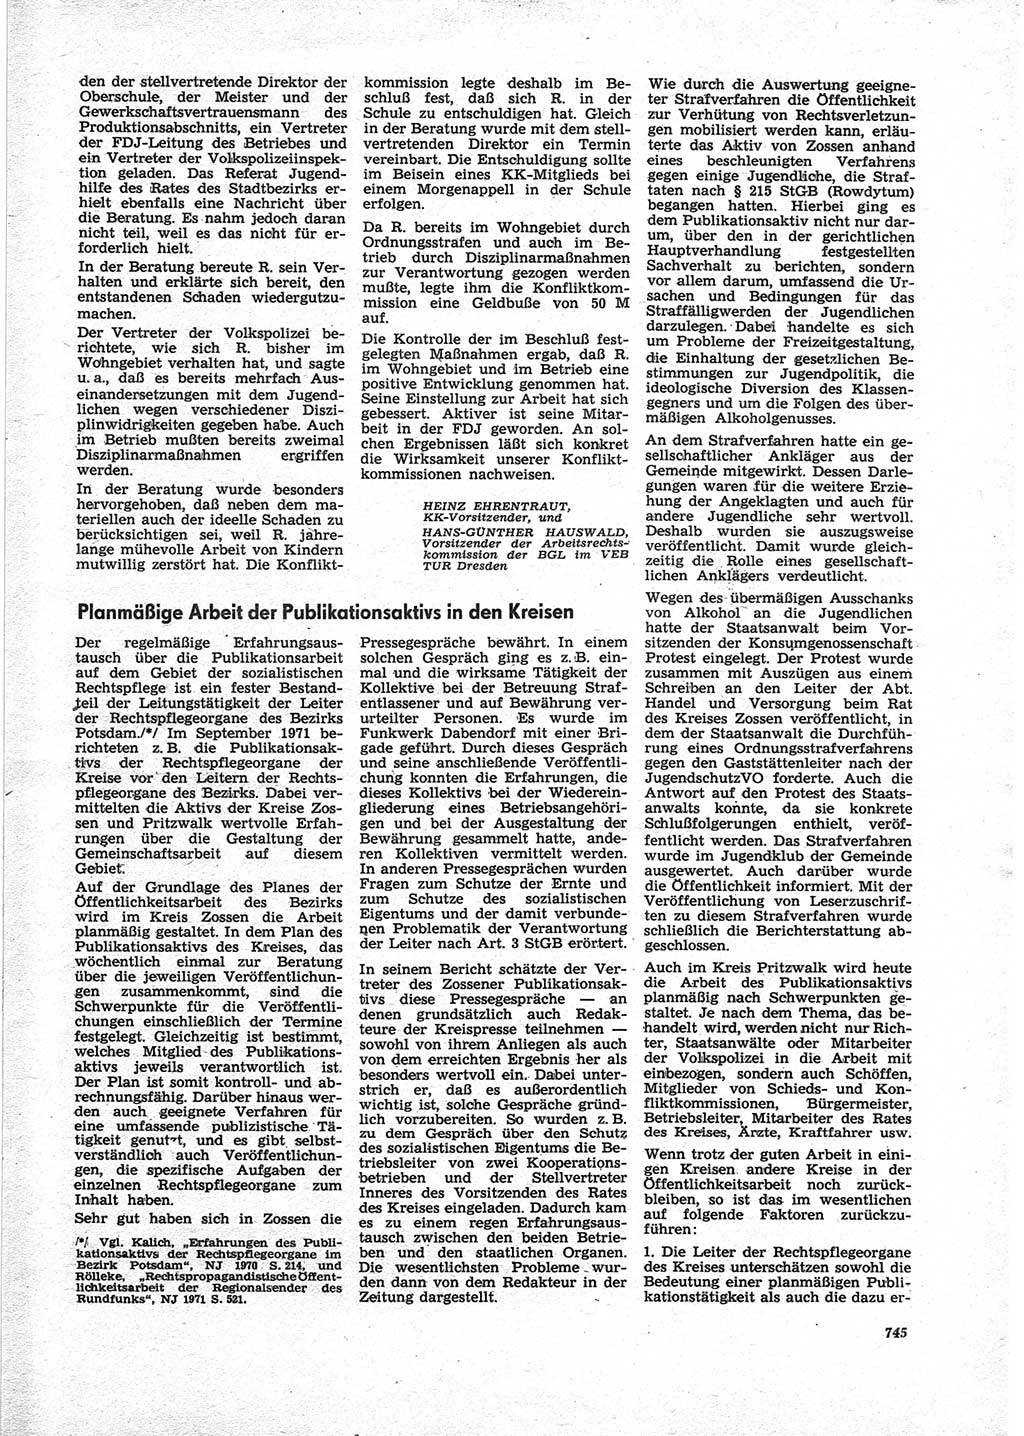 Neue Justiz (NJ), Zeitschrift für Recht und Rechtswissenschaft [Deutsche Demokratische Republik (DDR)], 25. Jahrgang 1971, Seite 745 (NJ DDR 1971, S. 745)